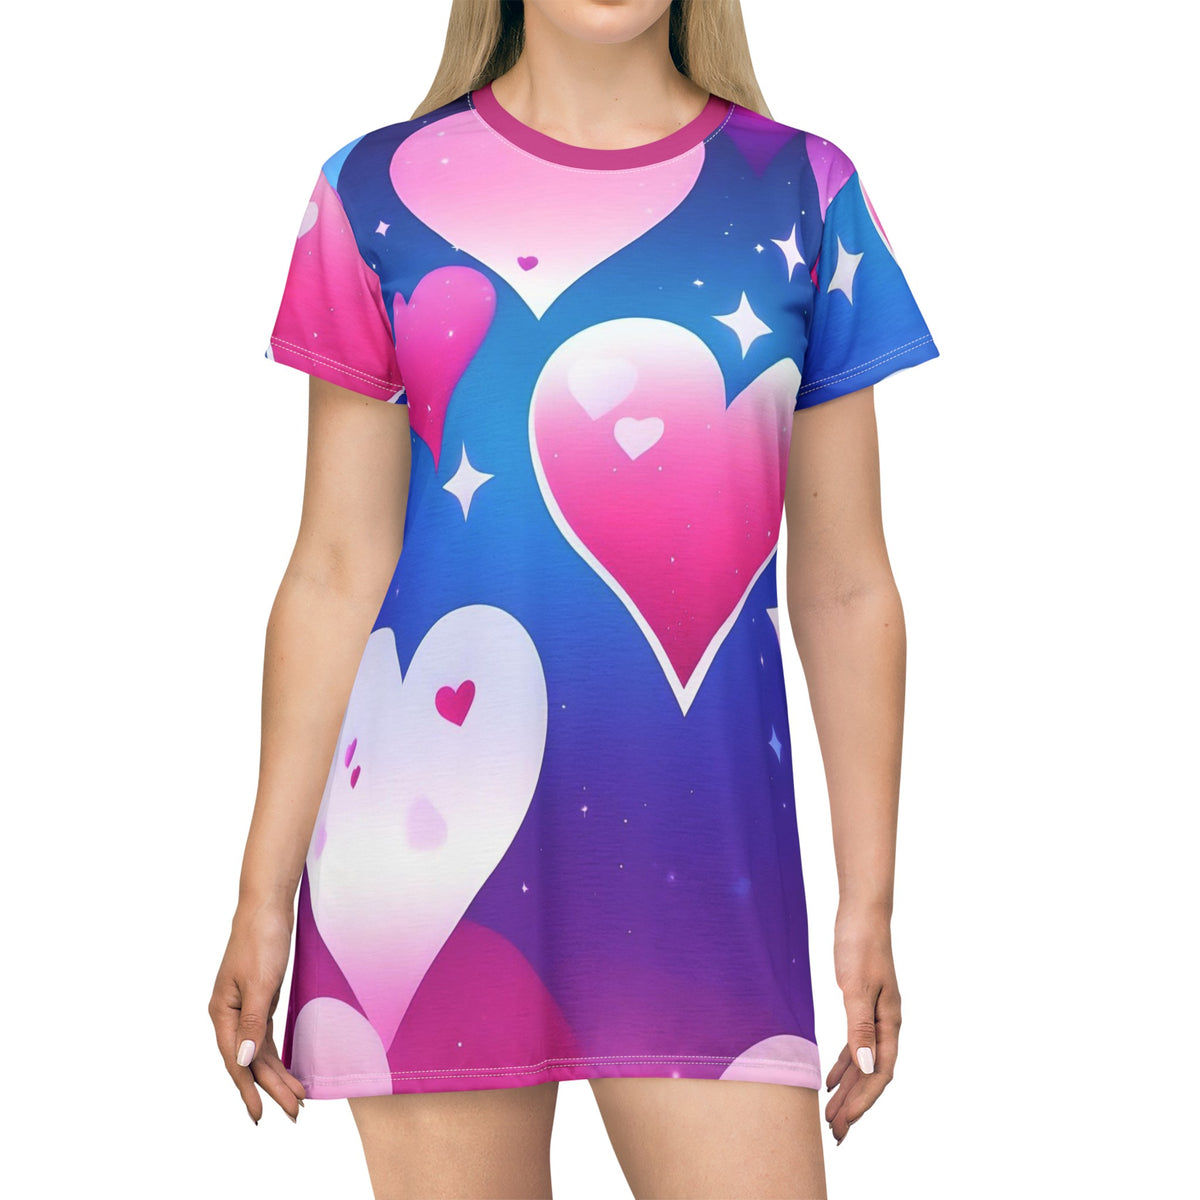 Bi Pride LGBTQ Heart All Over Print T-Shirt Dress